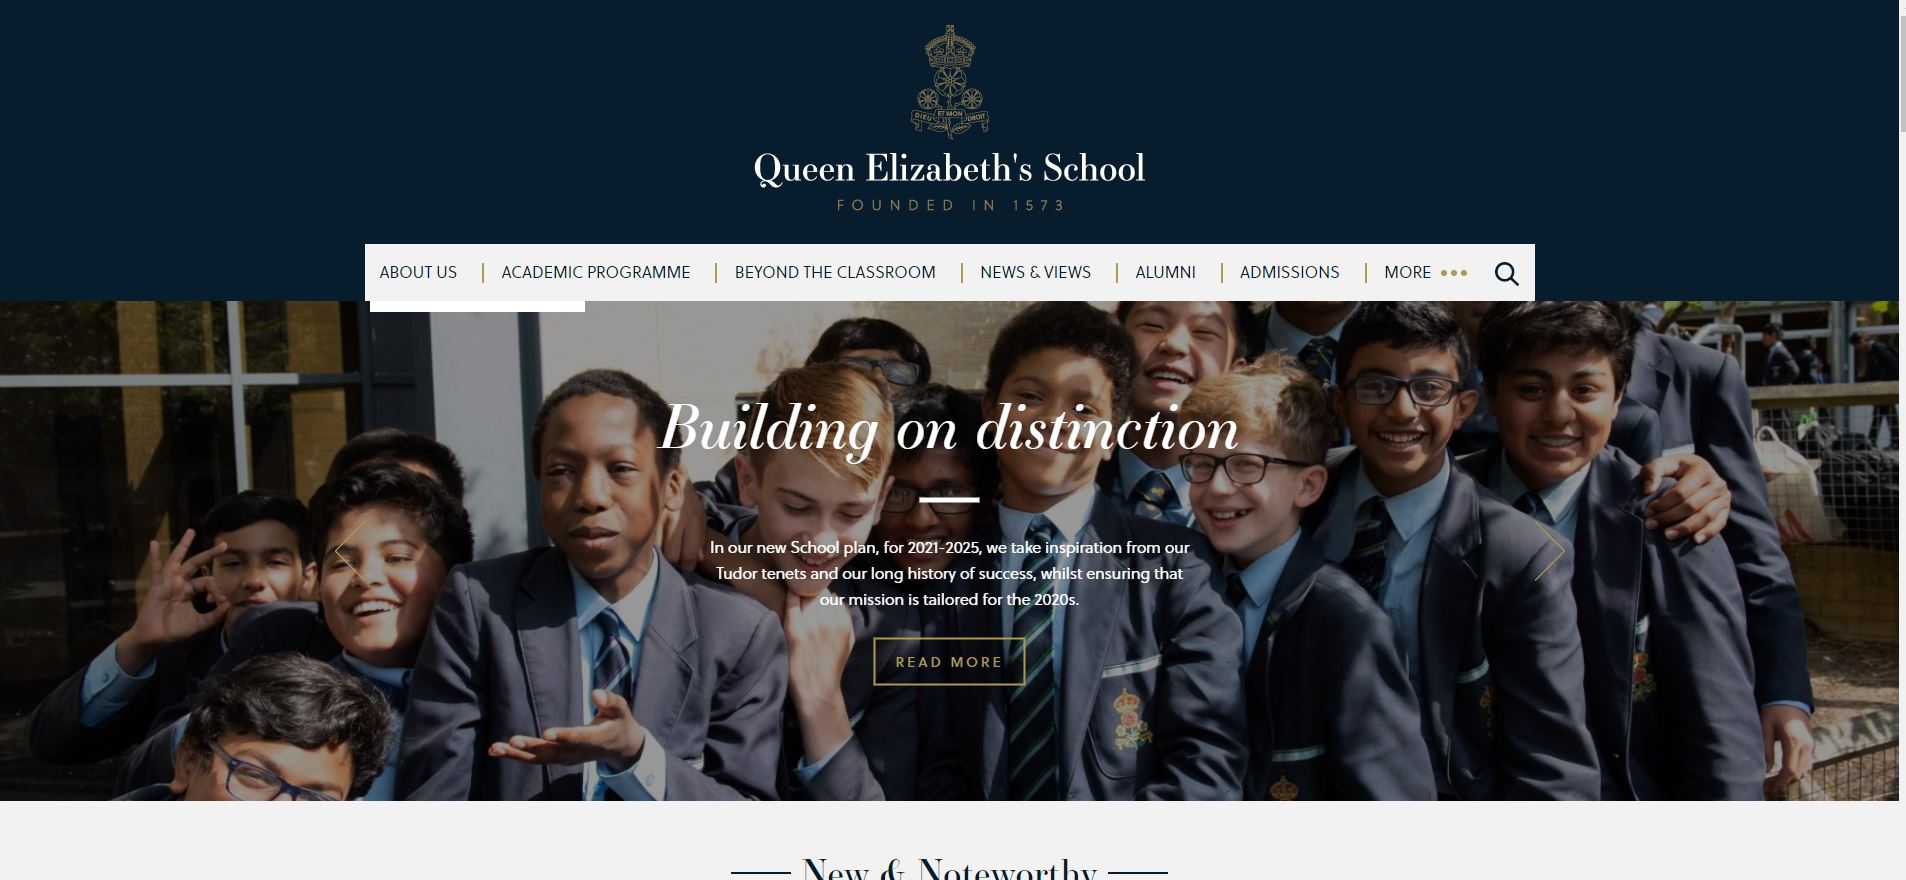 The Queen Elizabeth’s School